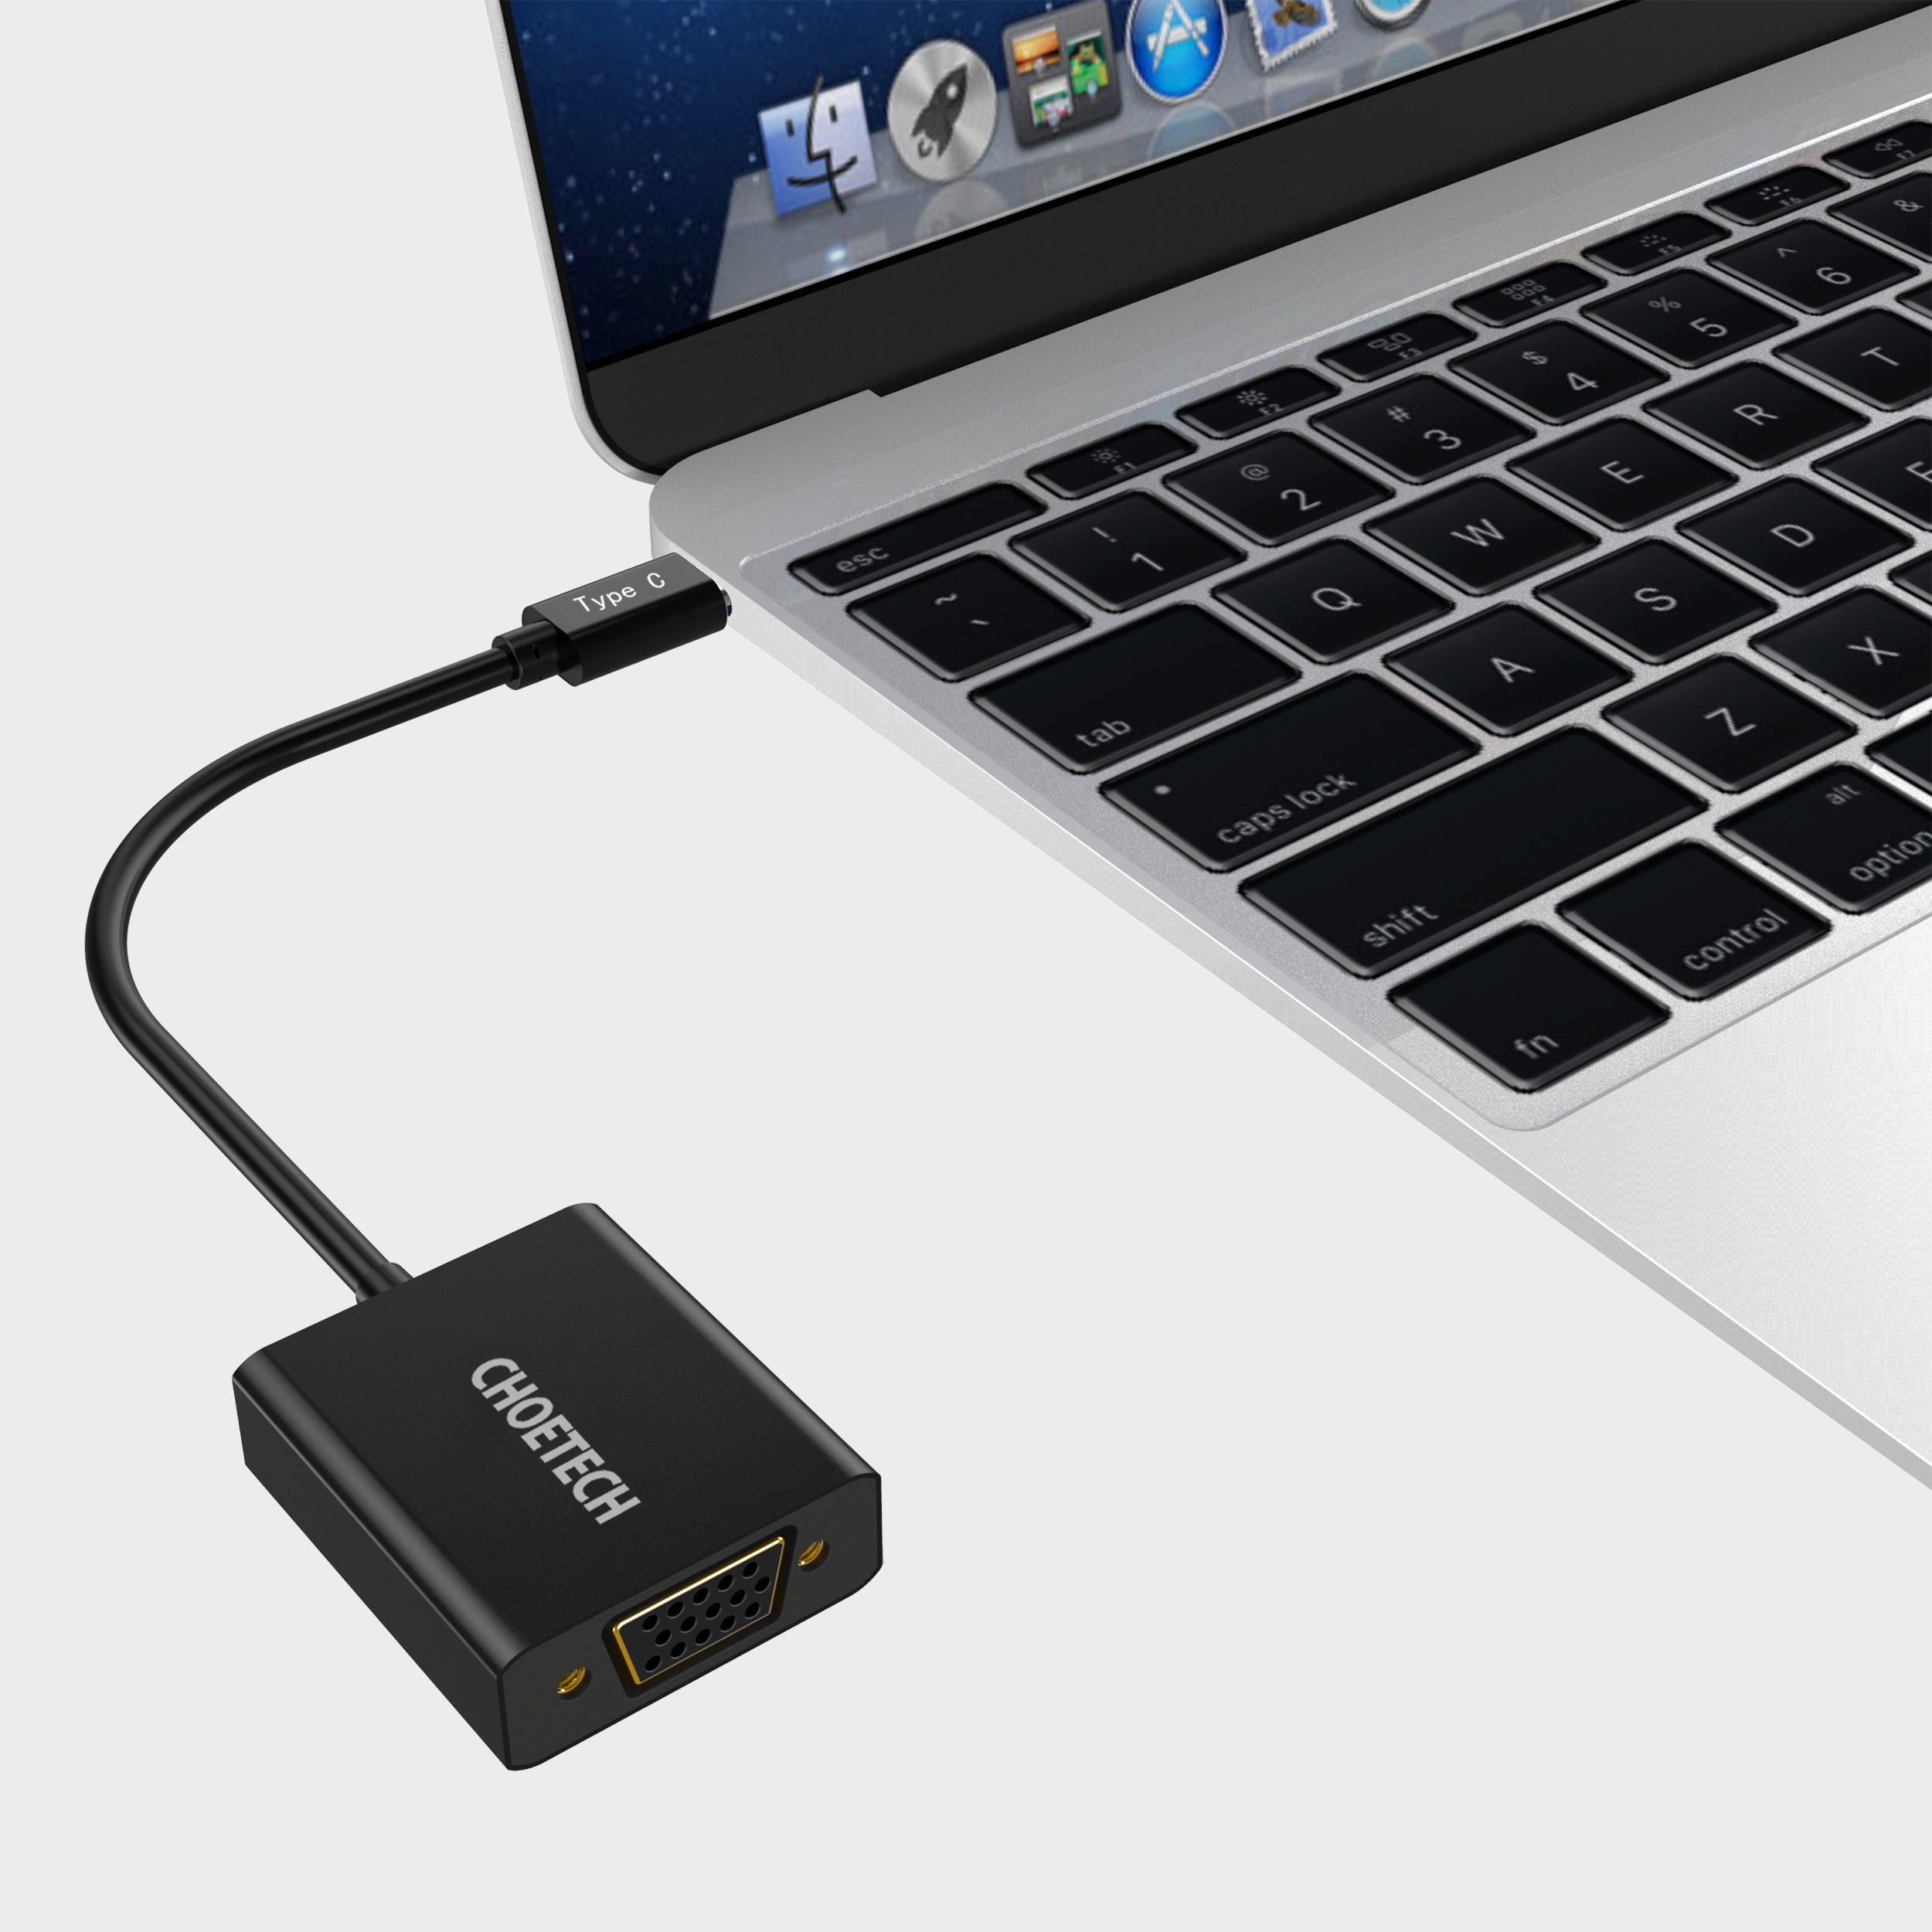 HUB-V01 Choetech 1080p unterstützt USB 3.1 USB Type-C auf VGA Adapter (Thunderbolt 3 Port kompatibel) für MacBook, Chromebook Pixel und weitere Type-C Geräte